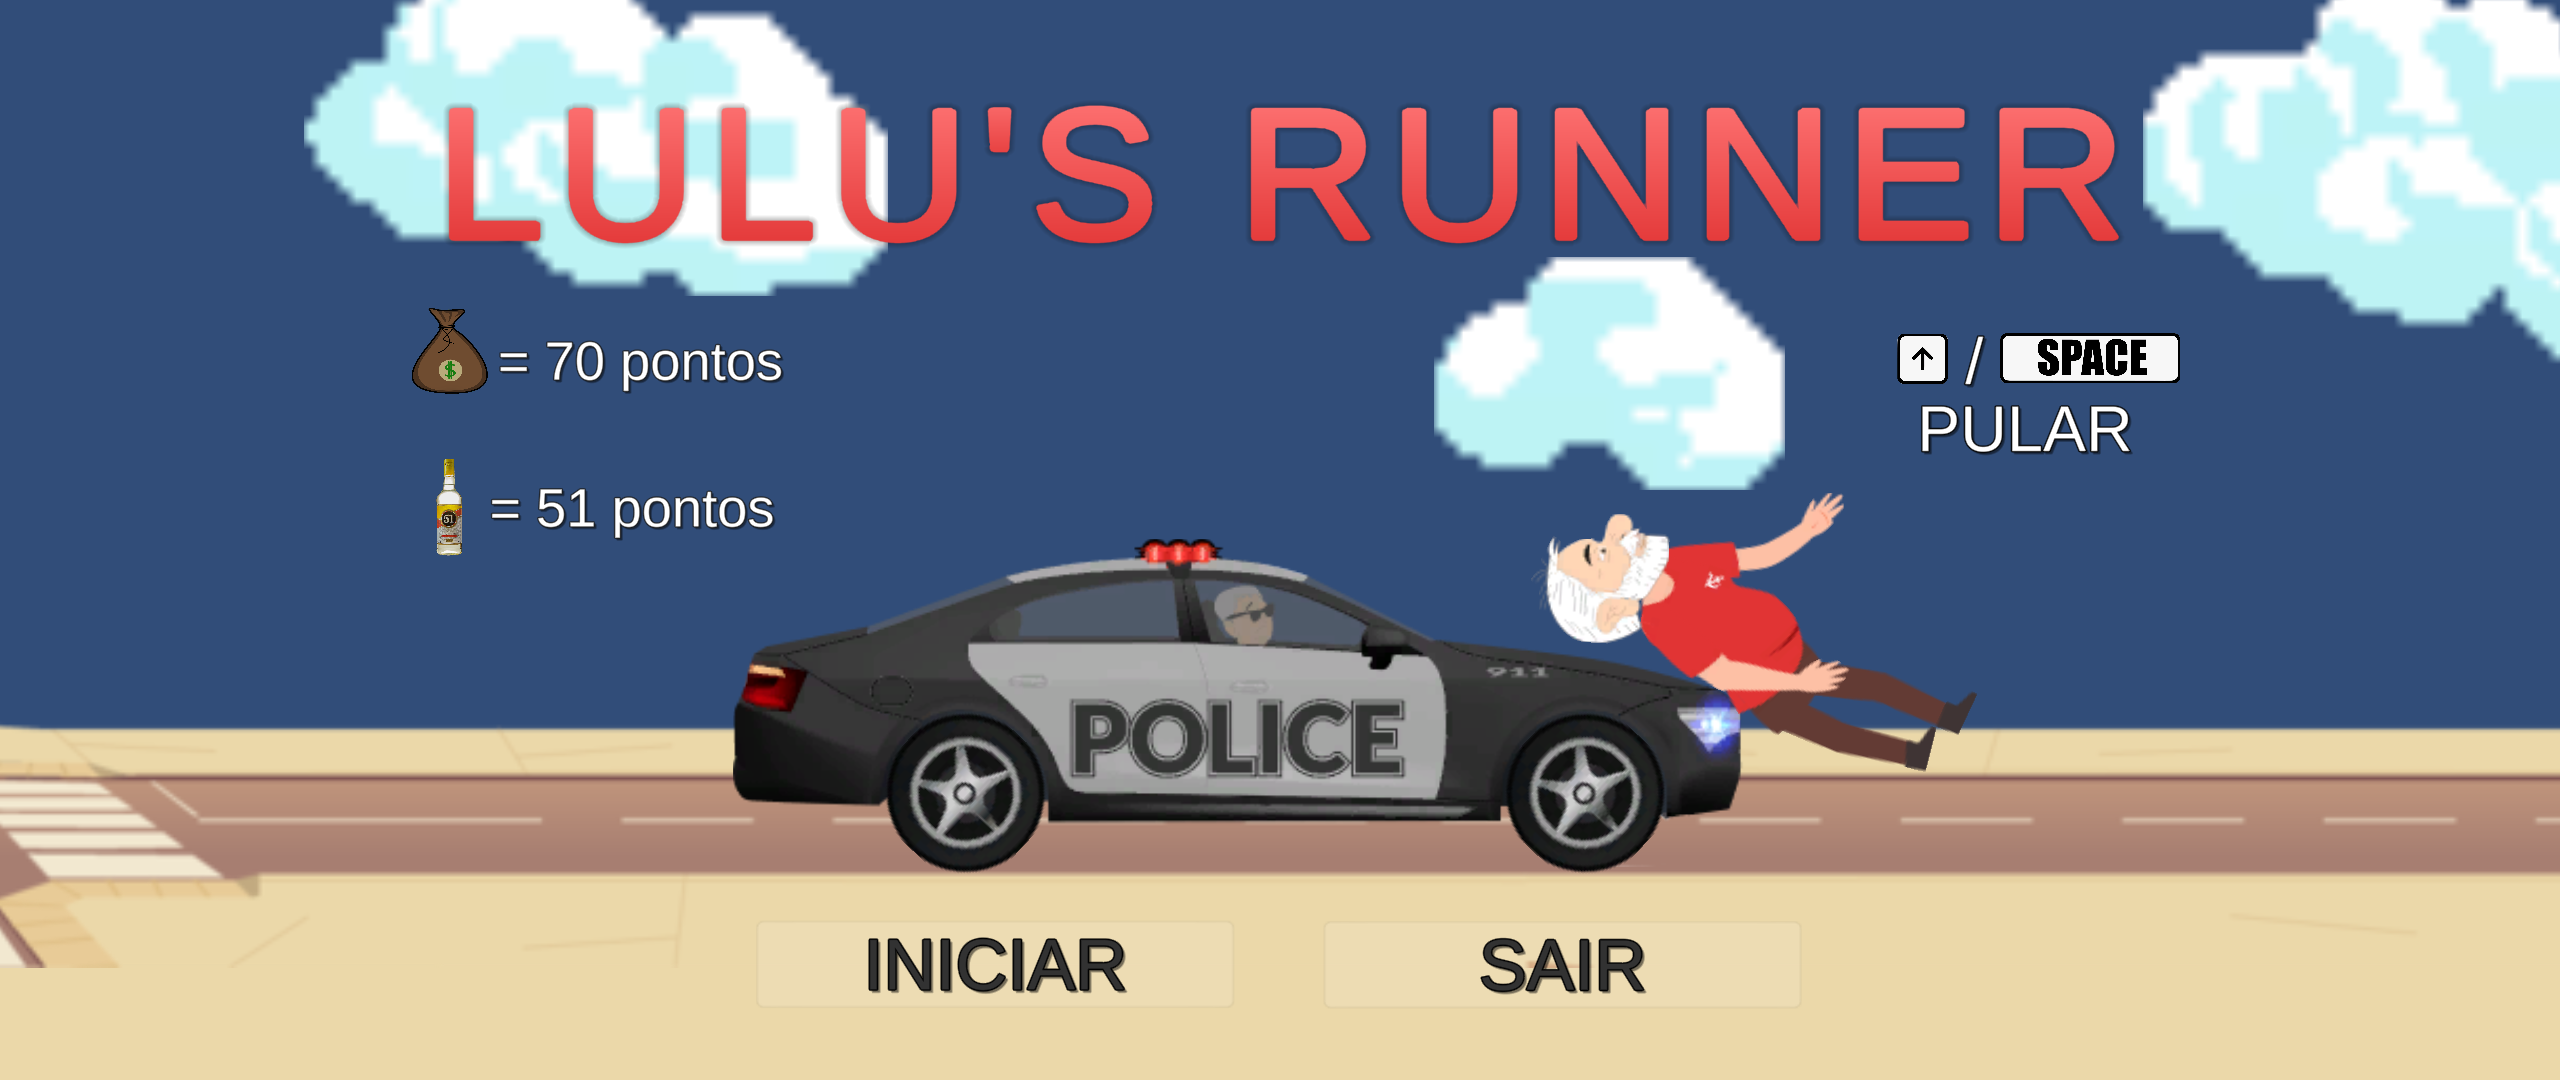 LuLu's Runner